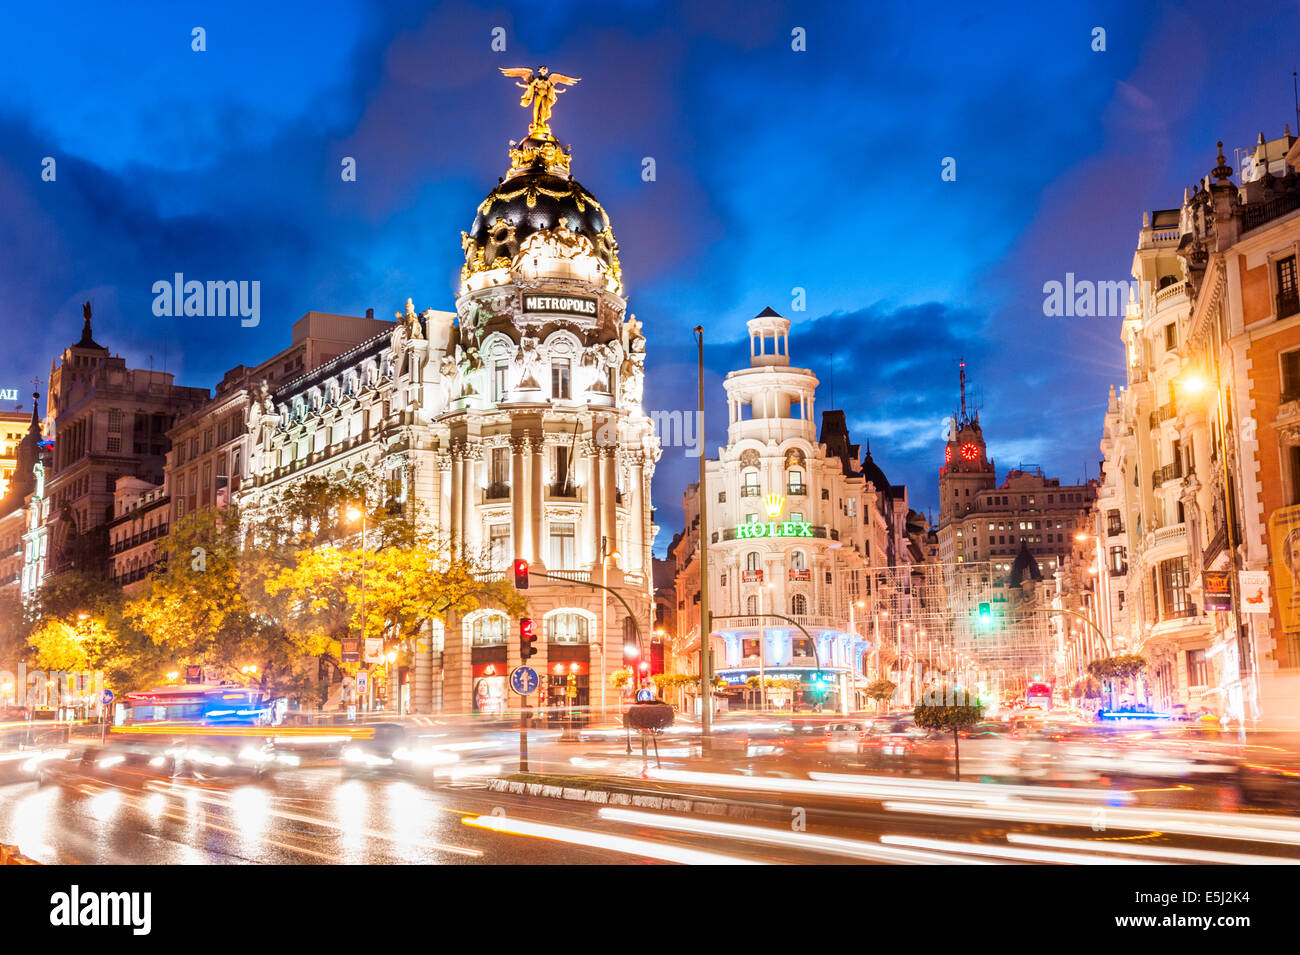 La métropole s'appuyant sur le coin de la Calle de Alcalá et Gran Via, Madrid, Espagne Banque D'Images